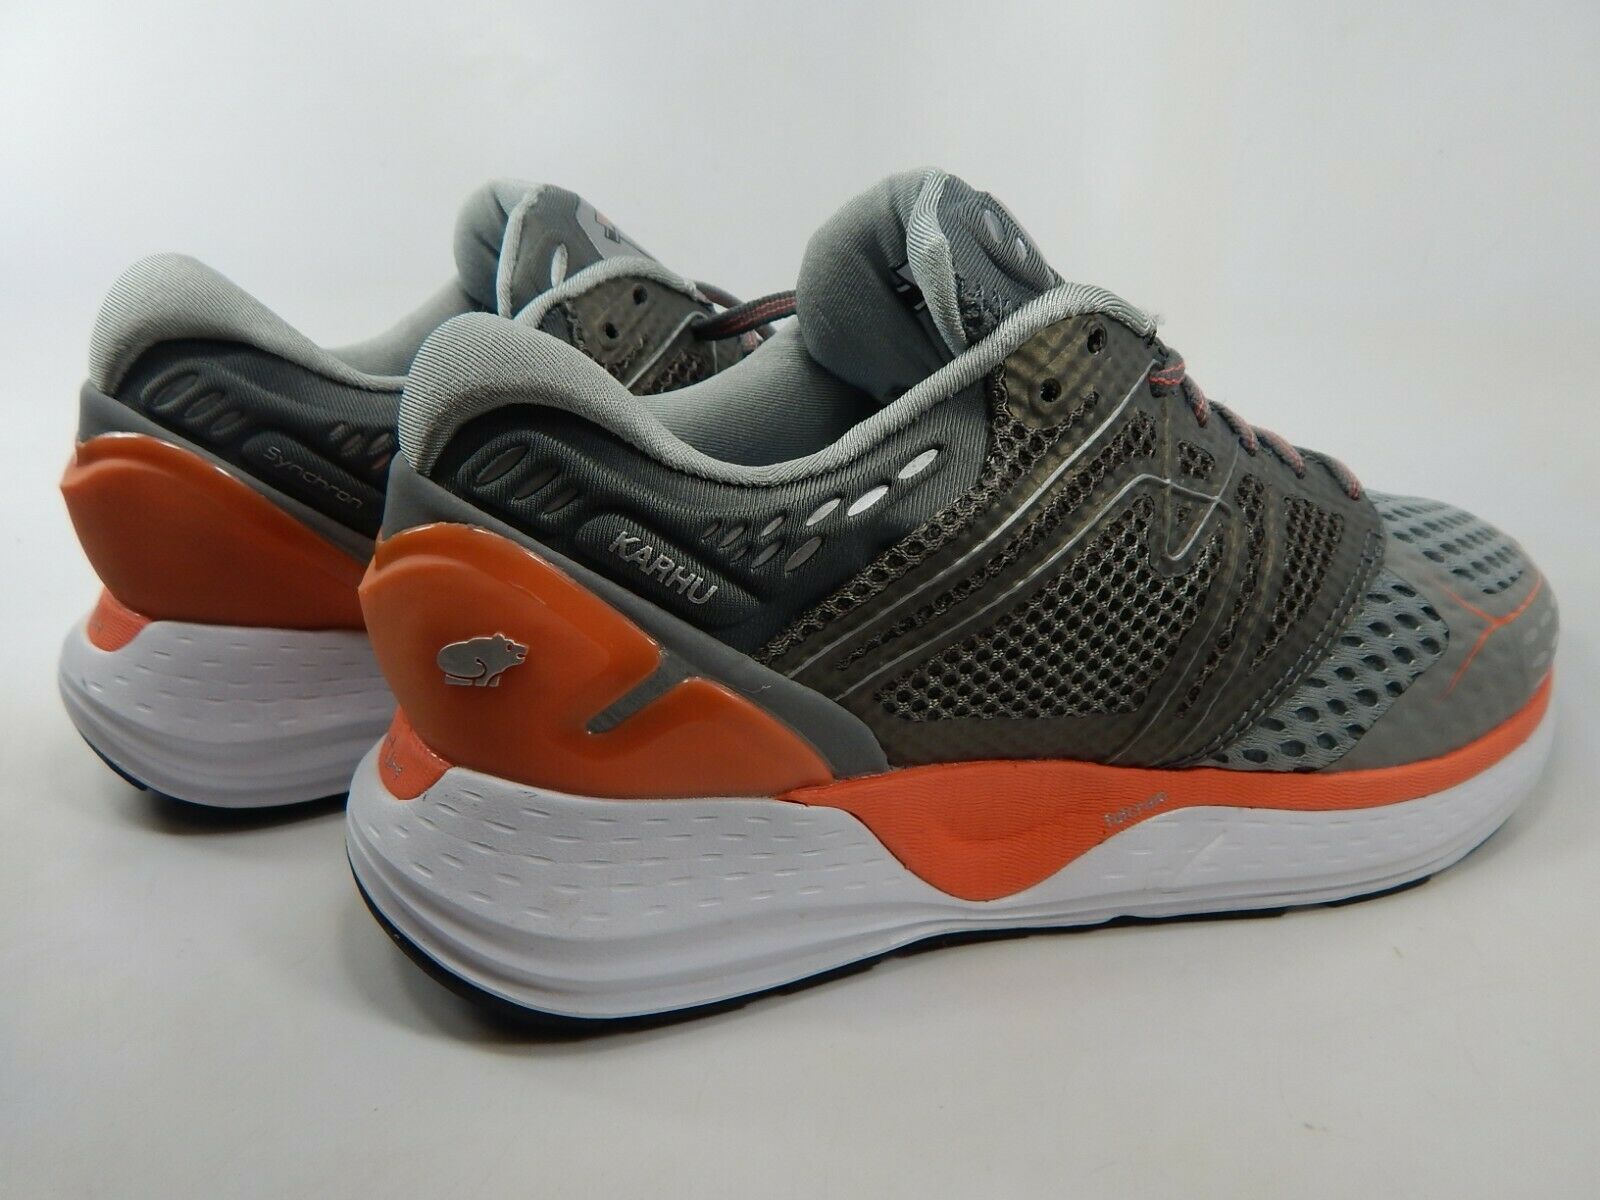 Karhu Synchron Ortix MRS Size 9 M (B) EU 40.5 Women's Running Shoes ...